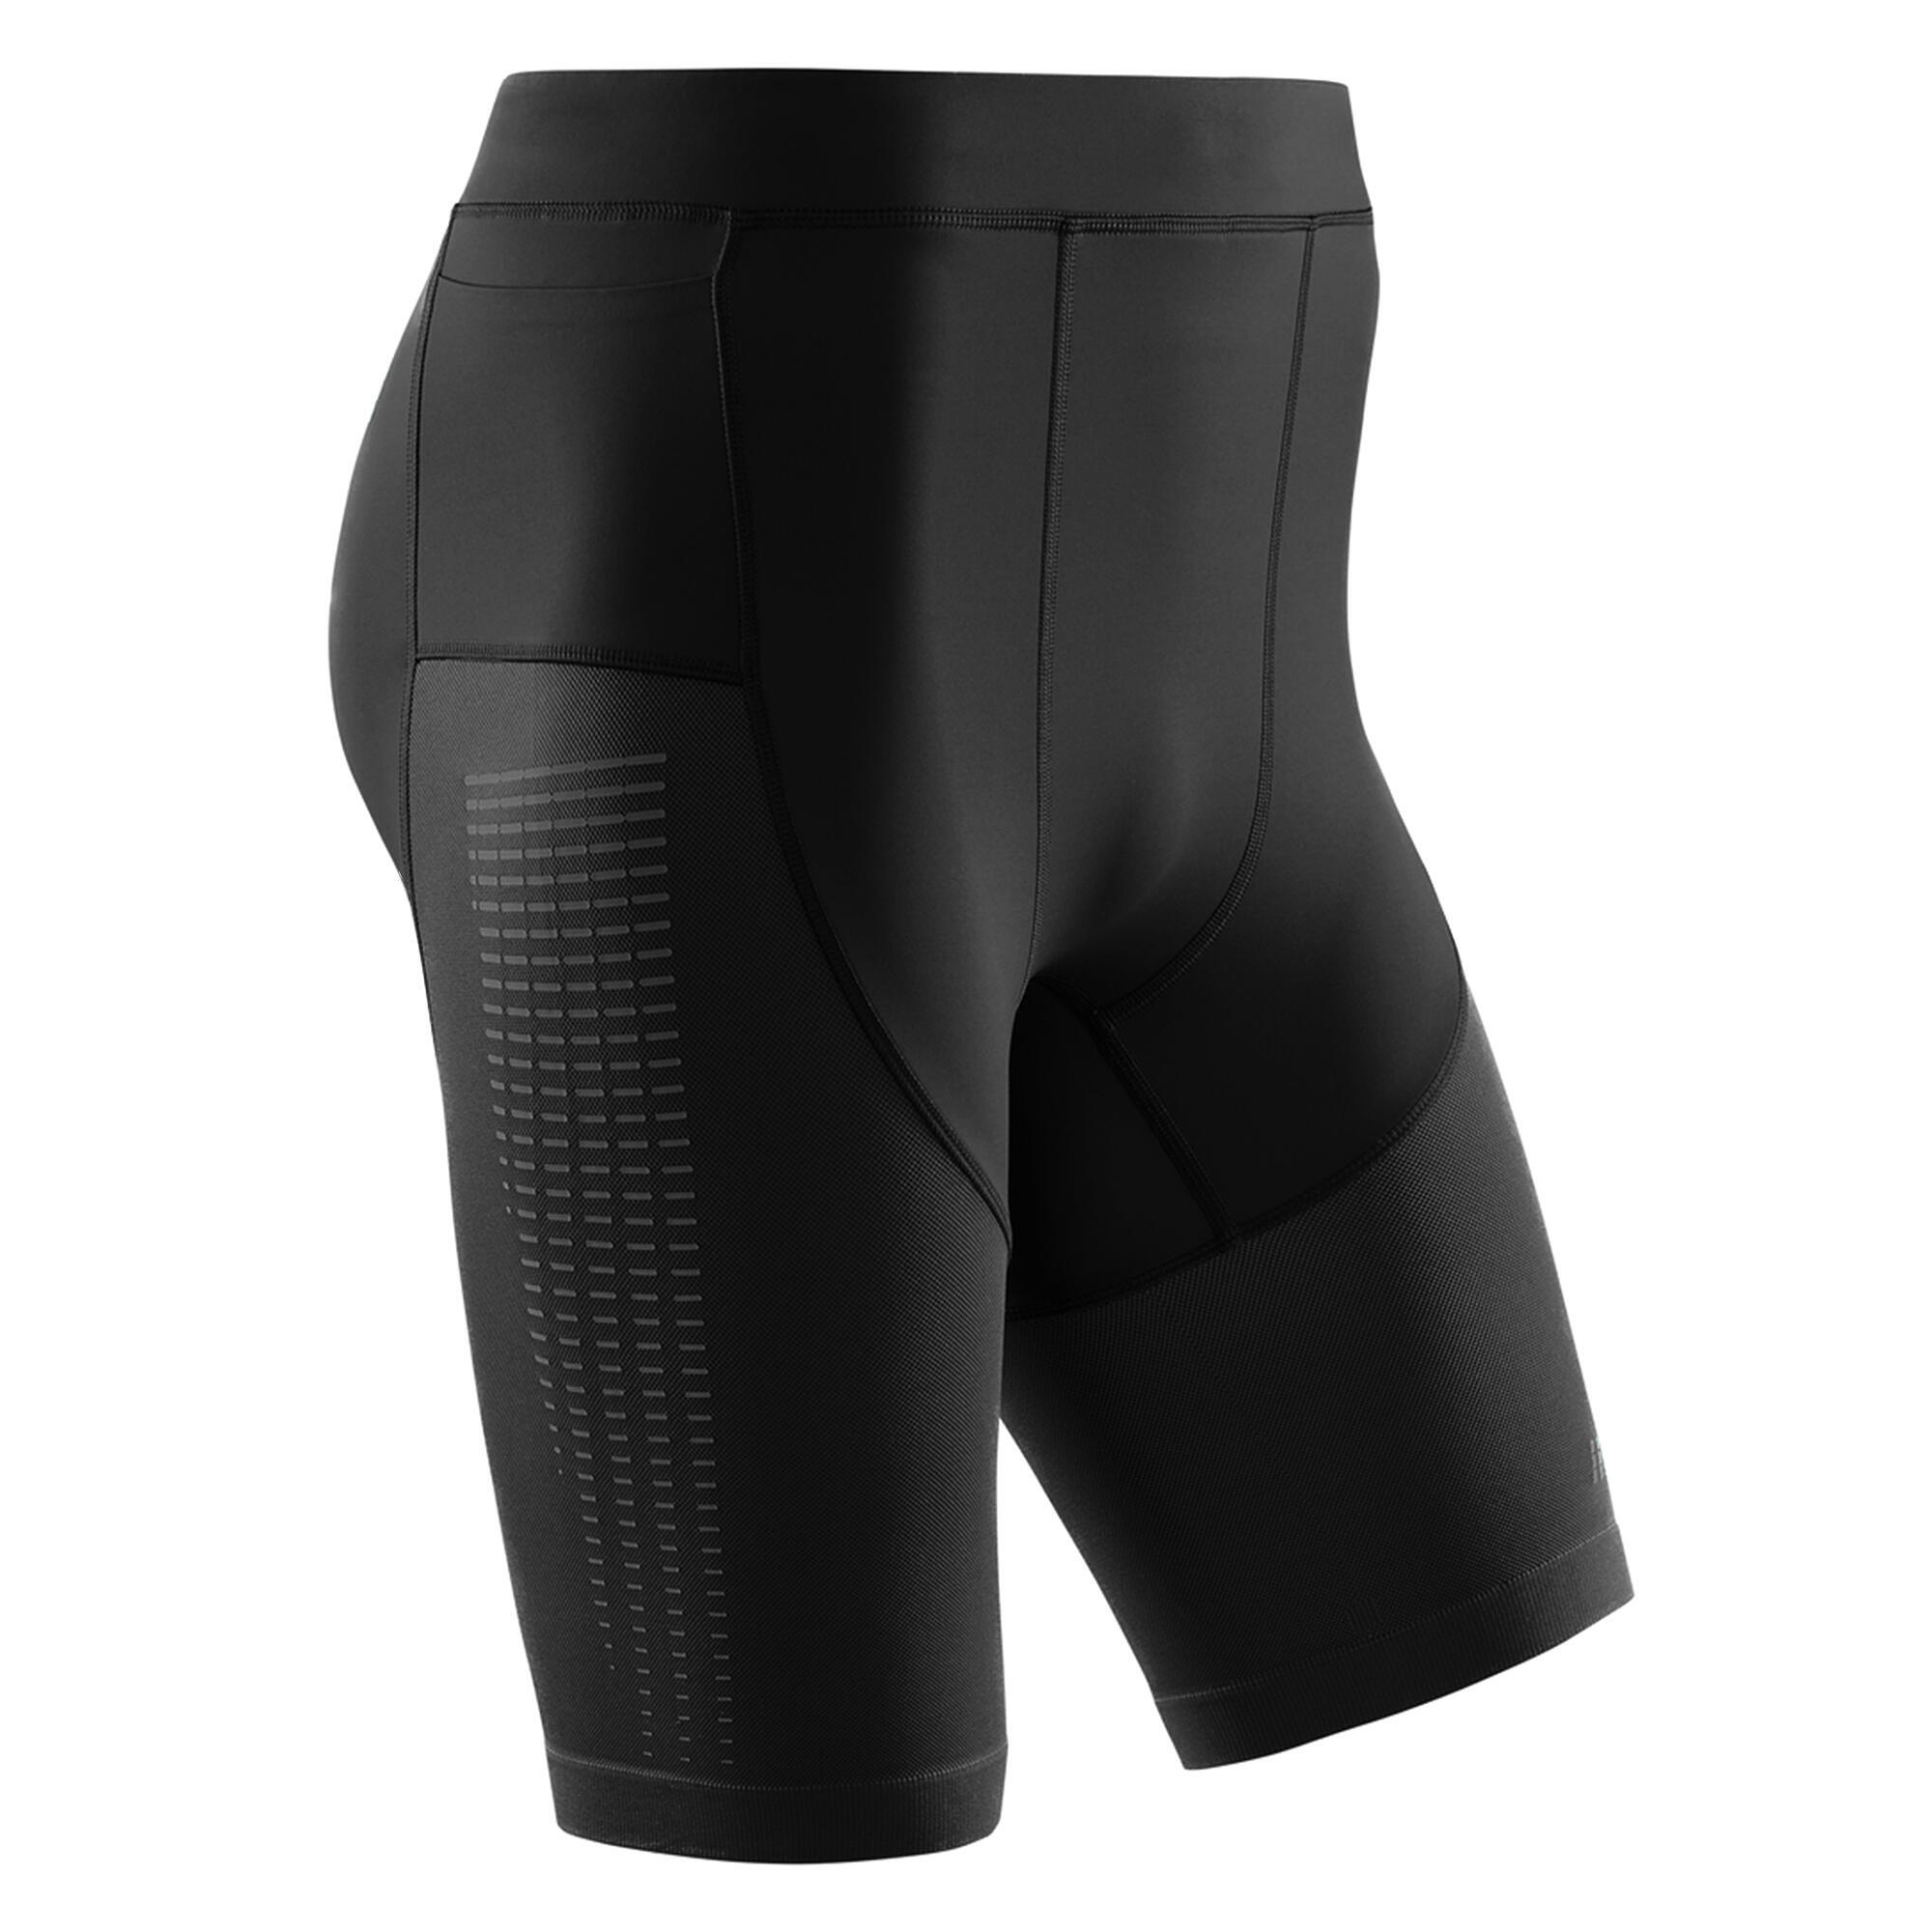 Шорты для бега Компрессионные шорты для бега 3.0 CEP, черный компрессионные шорты cep для бега мужские